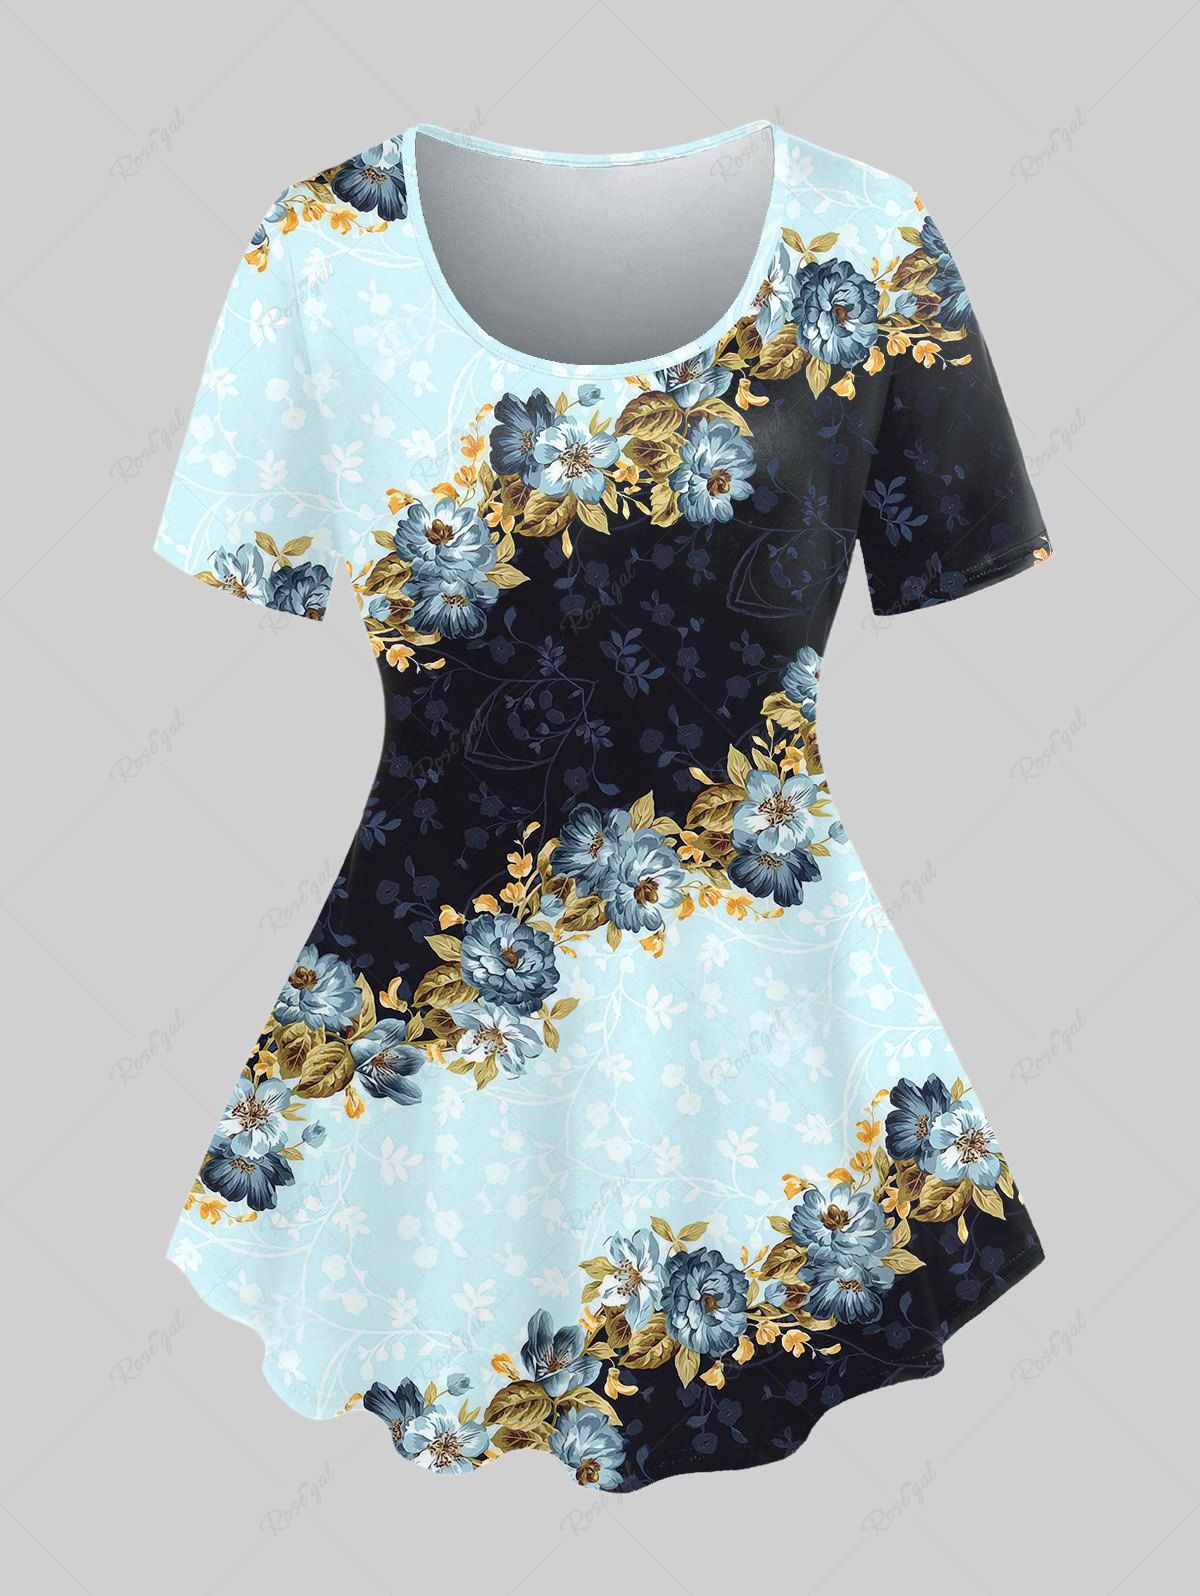 T-shirt Vintage Floral Imprimé de Grande Taille Bleu clair 5x | US 30-32